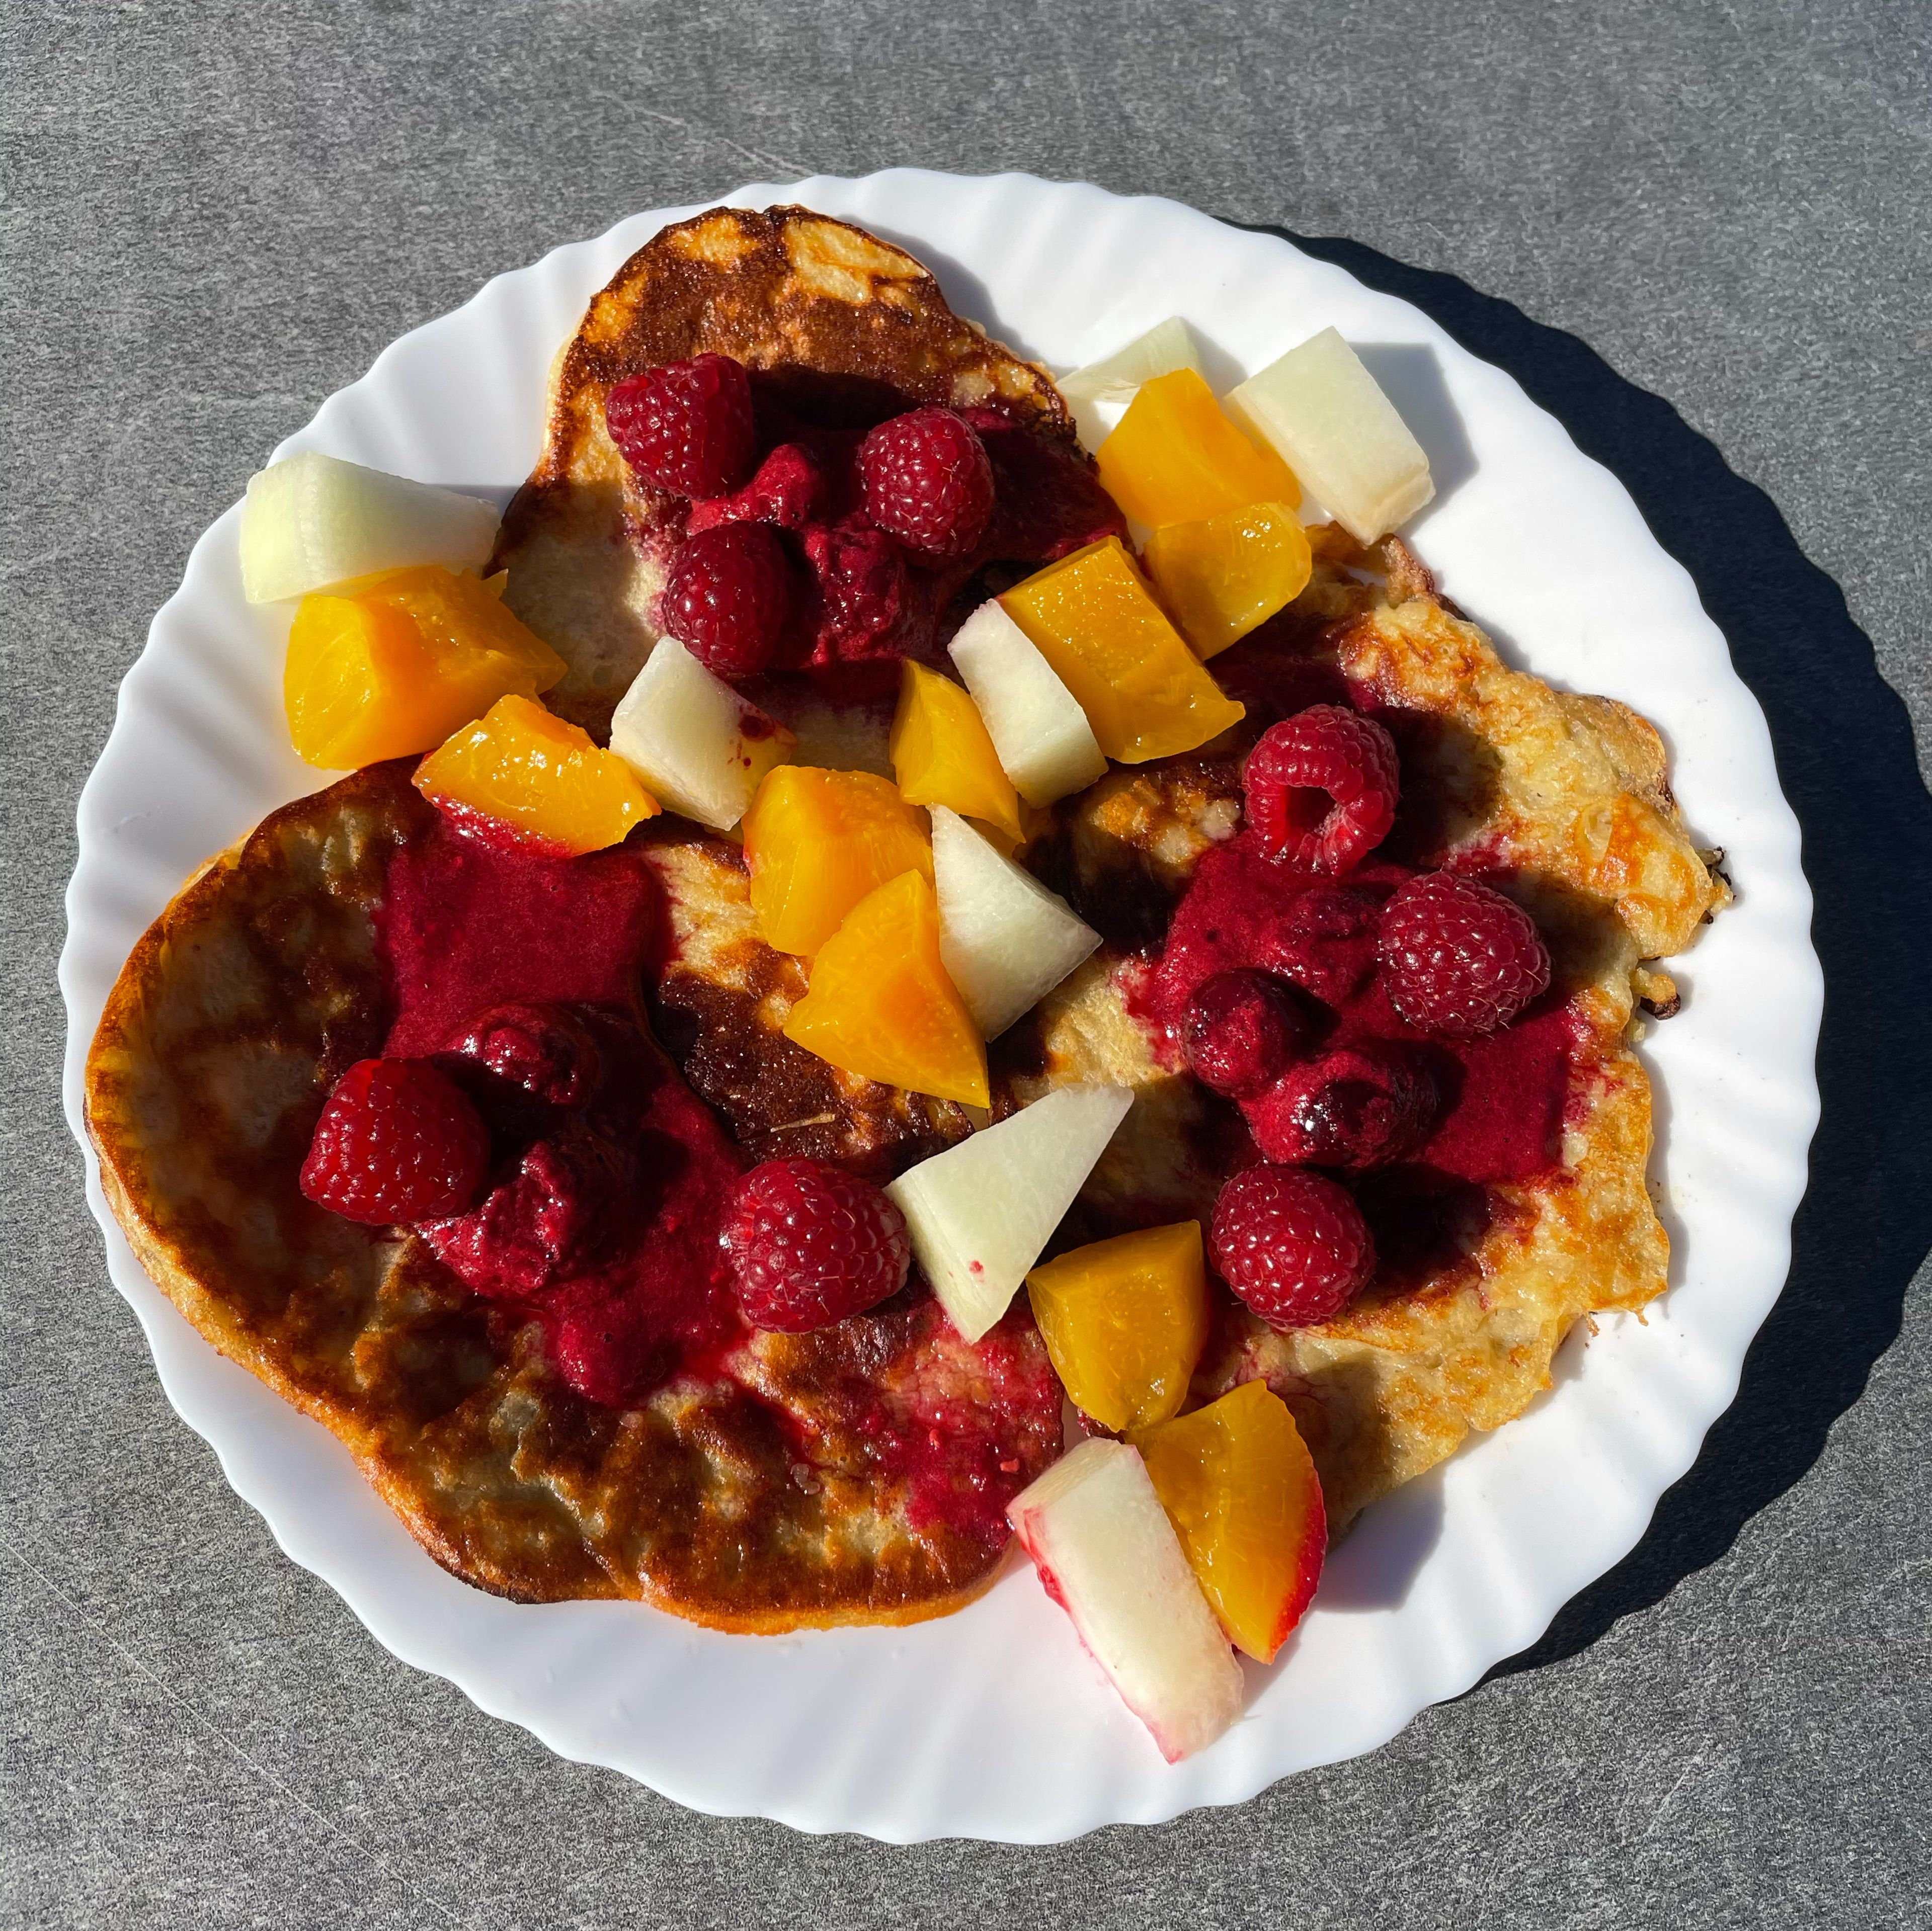 Füge noch beliebige Toppings wie beispielsweise Obst hinzu und genieße deine gesunden Pancakes!